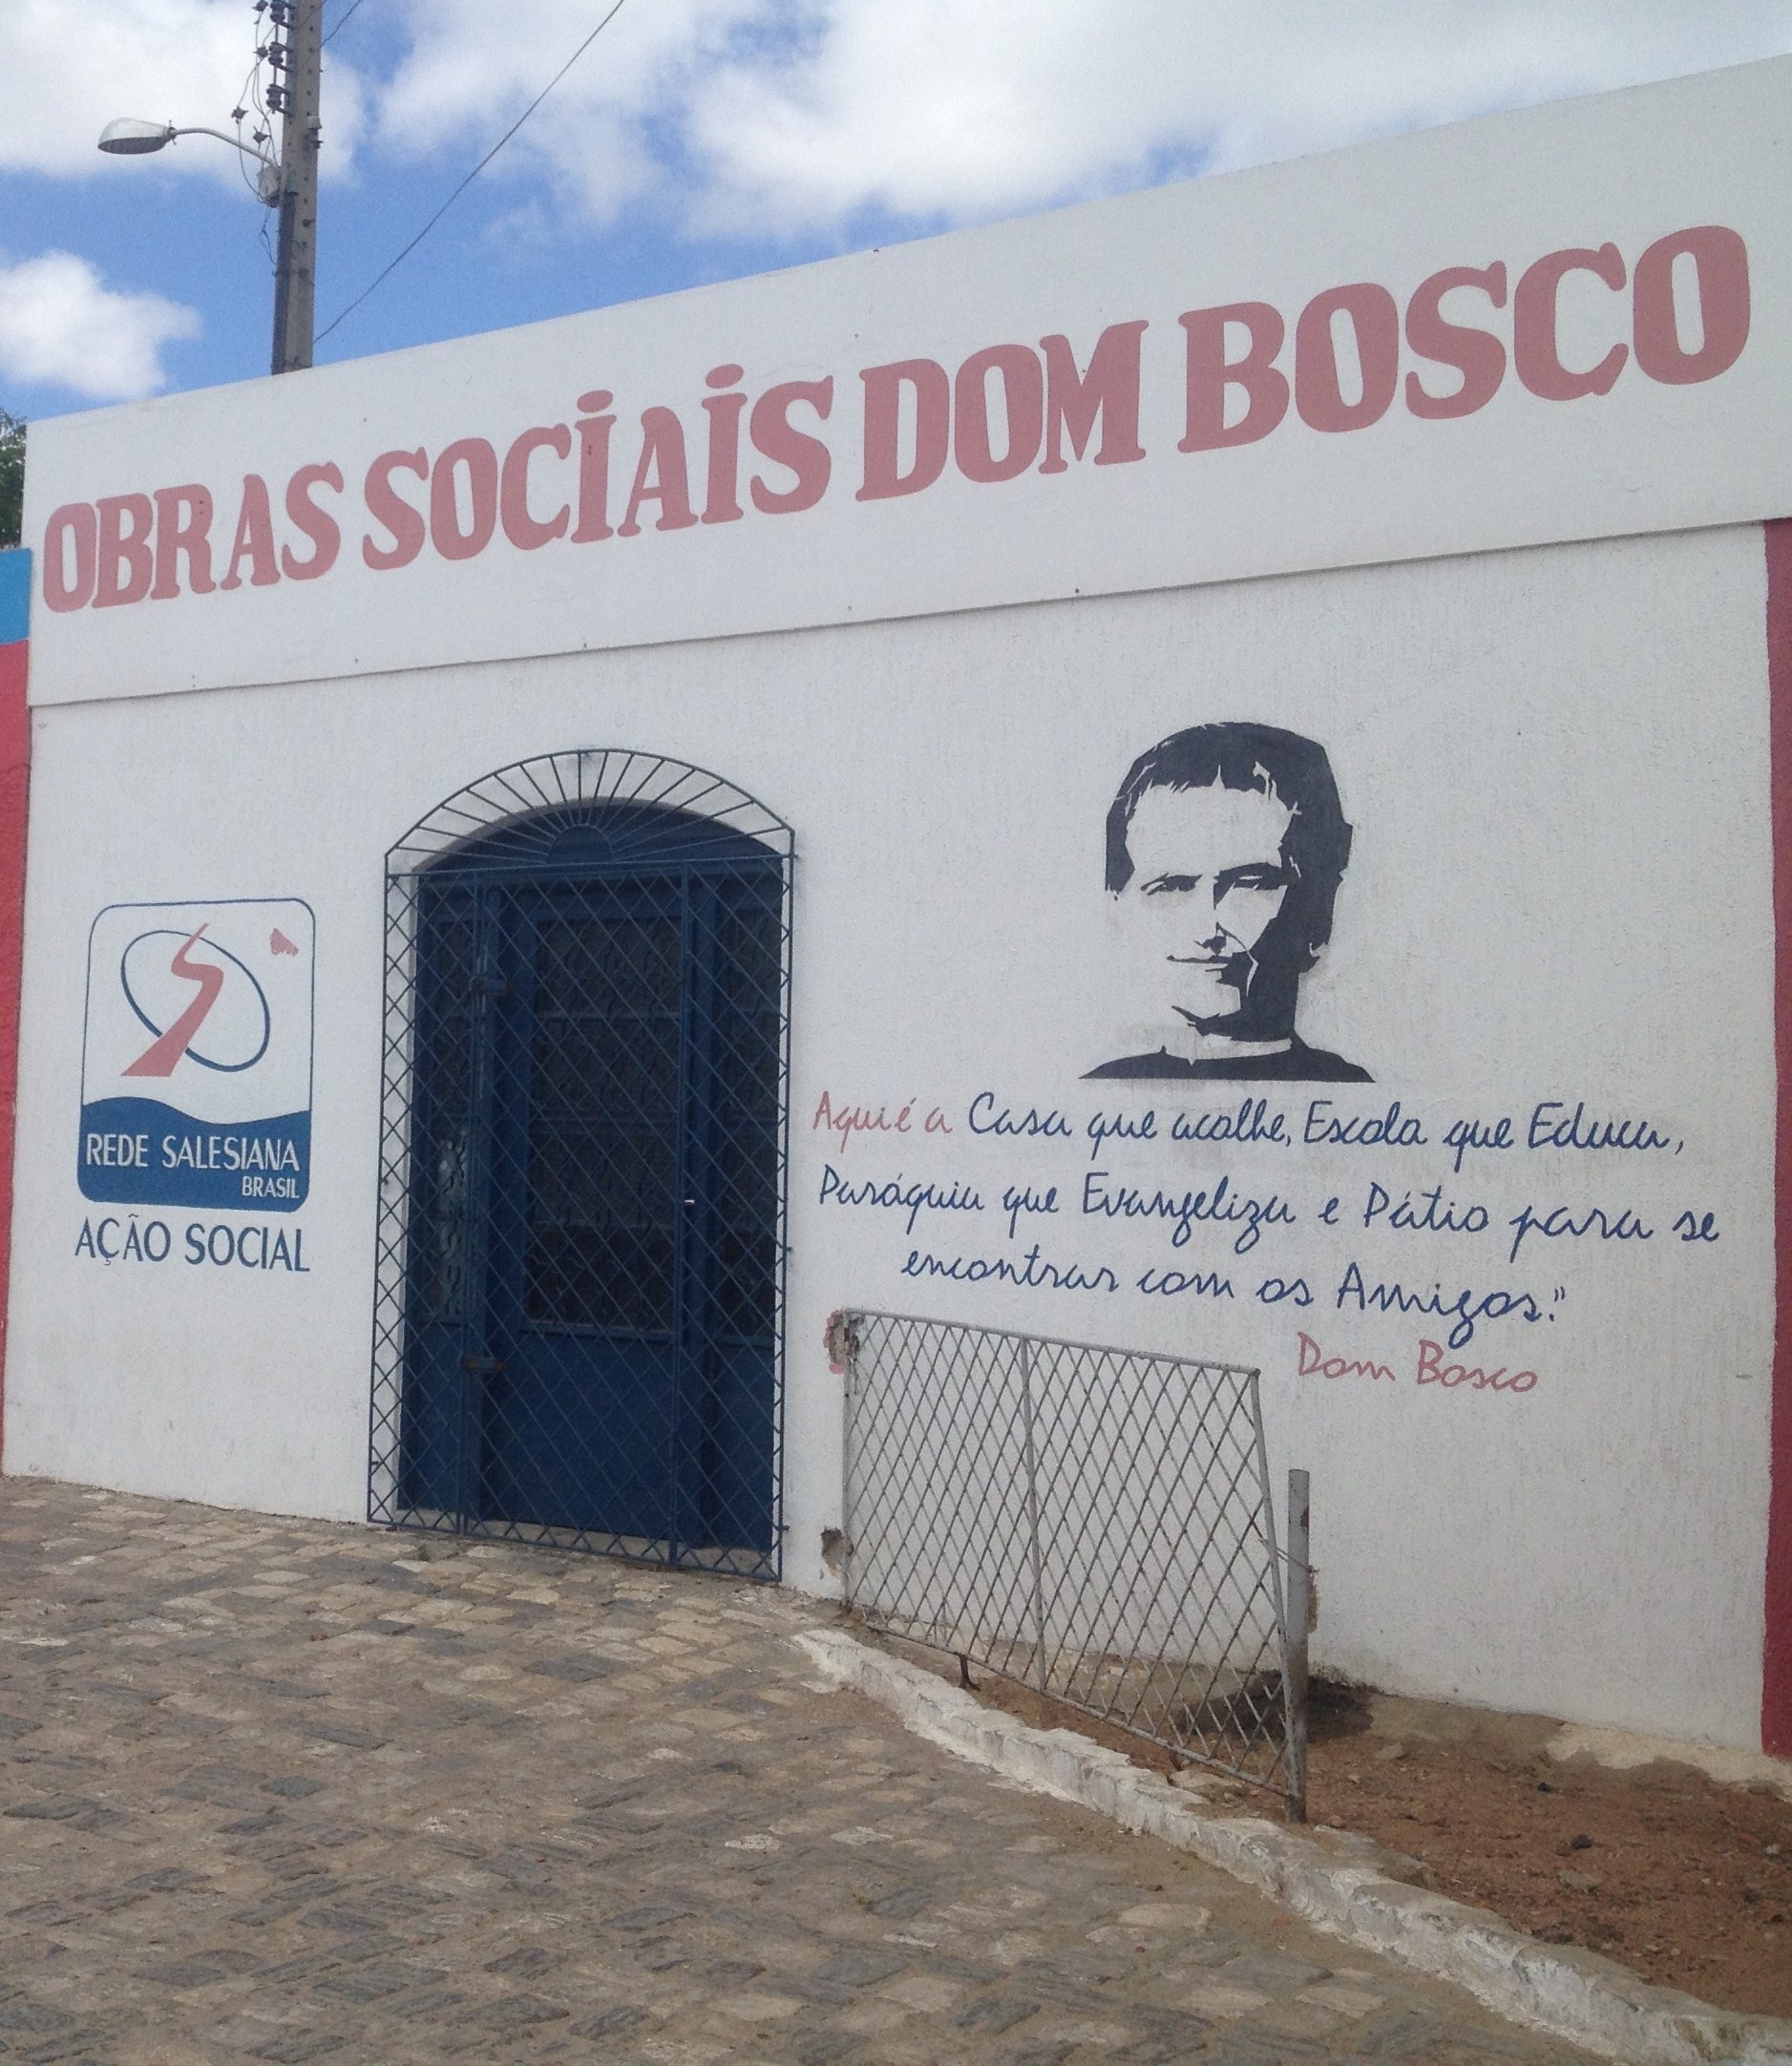 OBRAS SOCIAIS DOM BOSCO